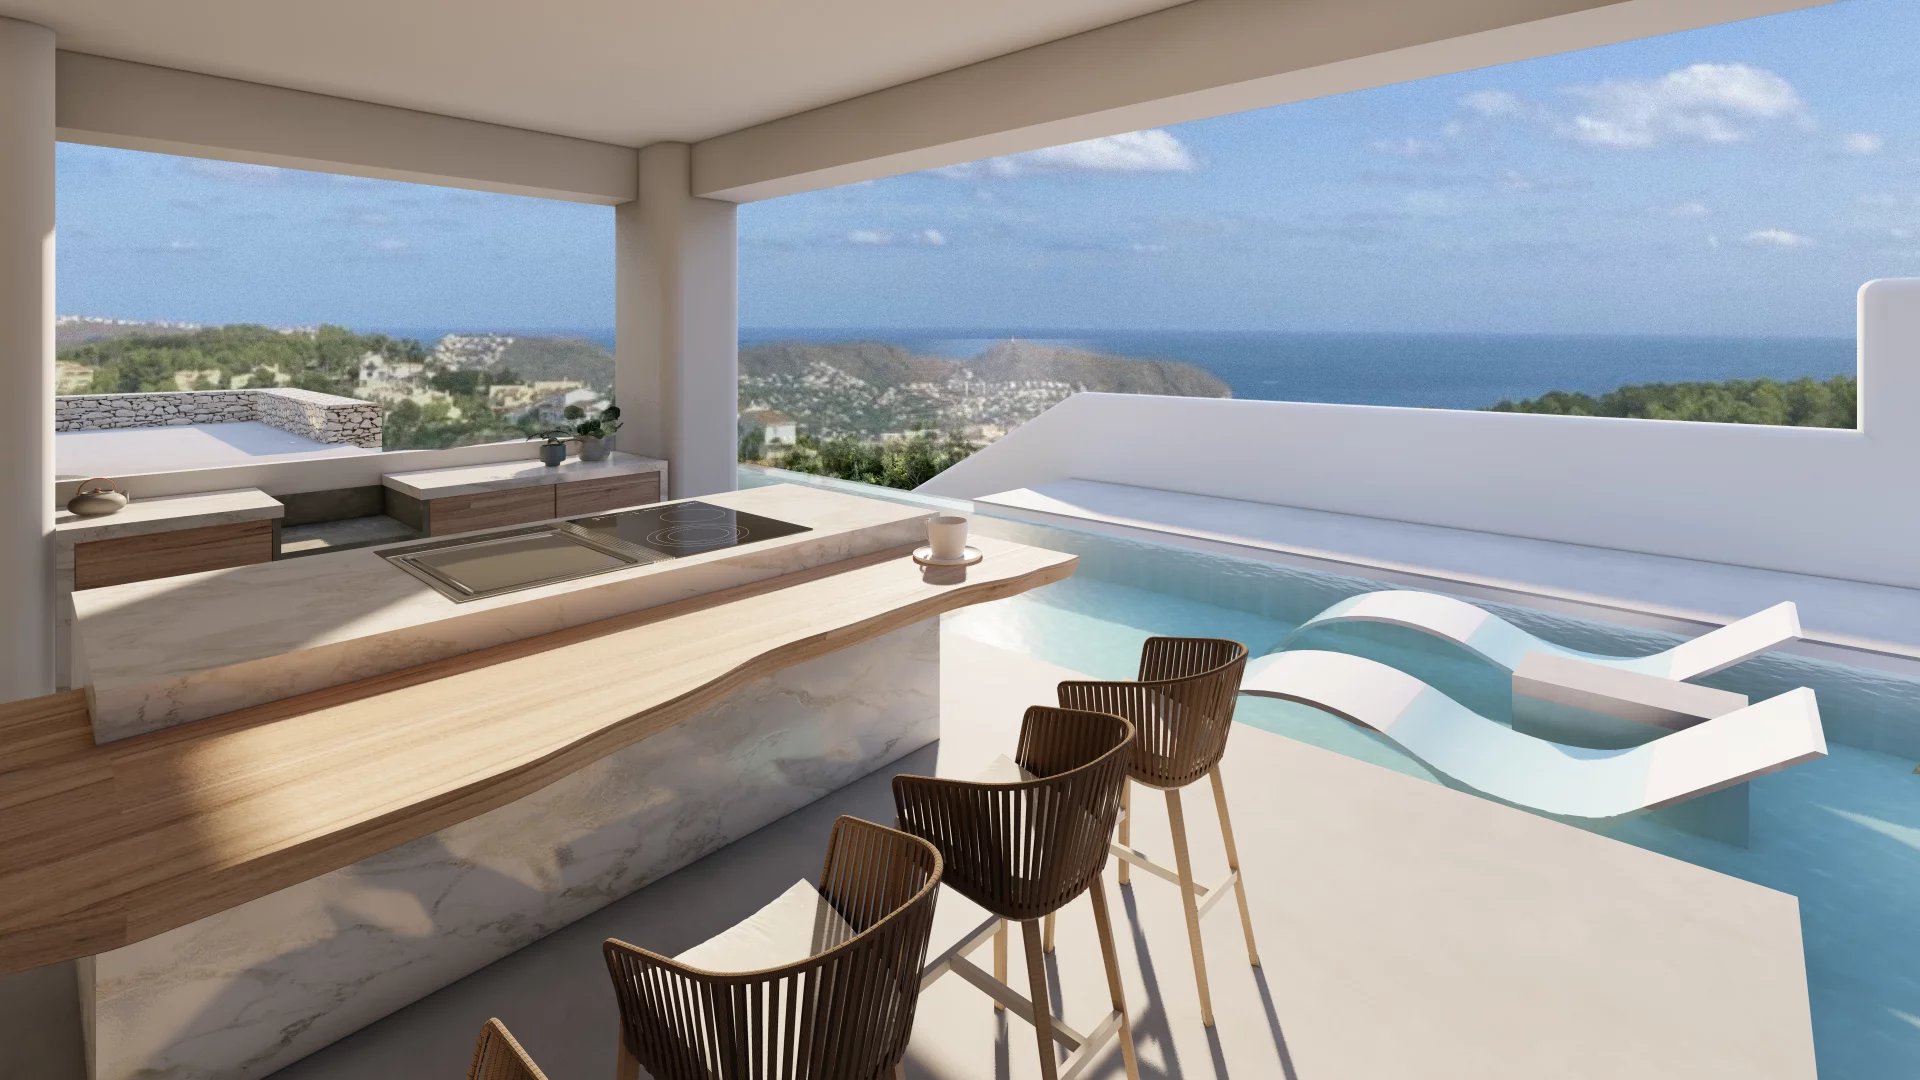 Schitterende villa in Ibiza-stijl met panoramisch zeezicht, in aanbouw in Moraira